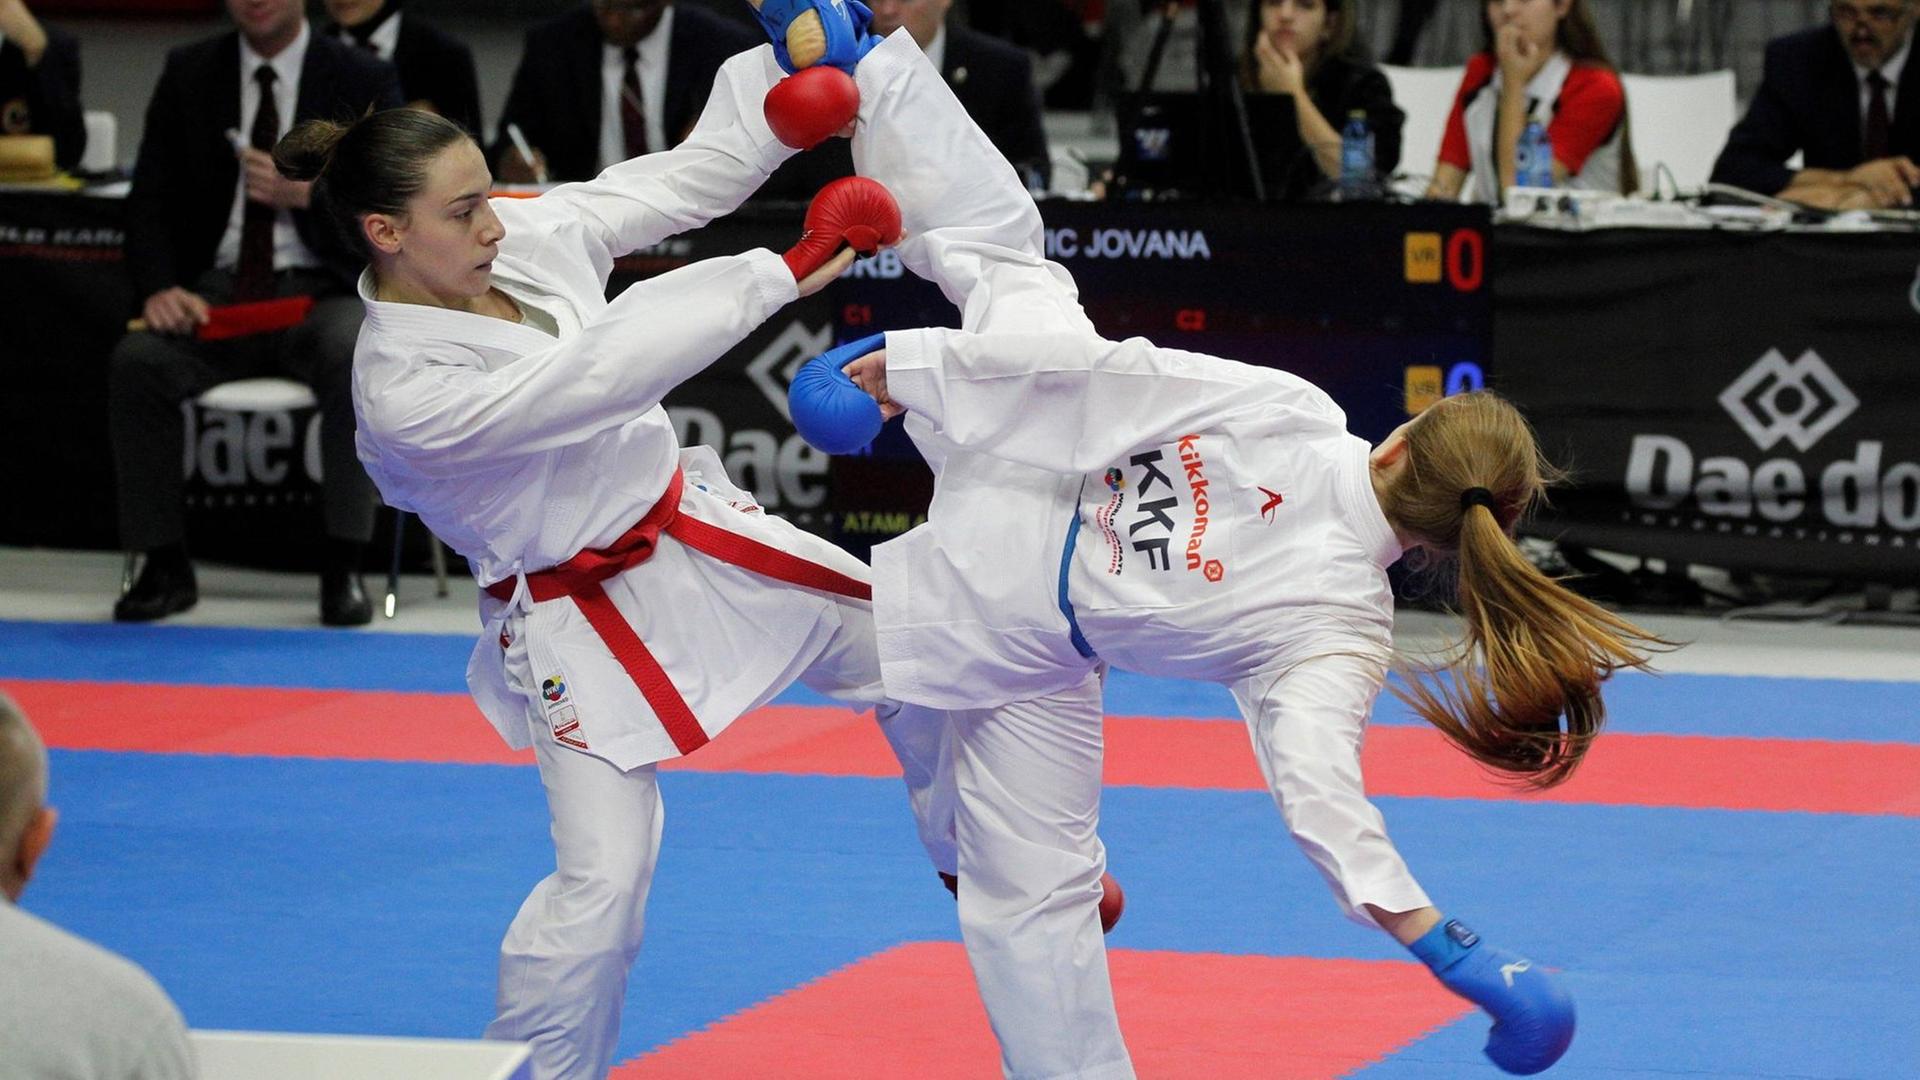 Die Serbin Jovana Prekoviz kämpft gegen Adelina Rama aus dem Kosovo während der Weltmeisterschaft in Madrid.